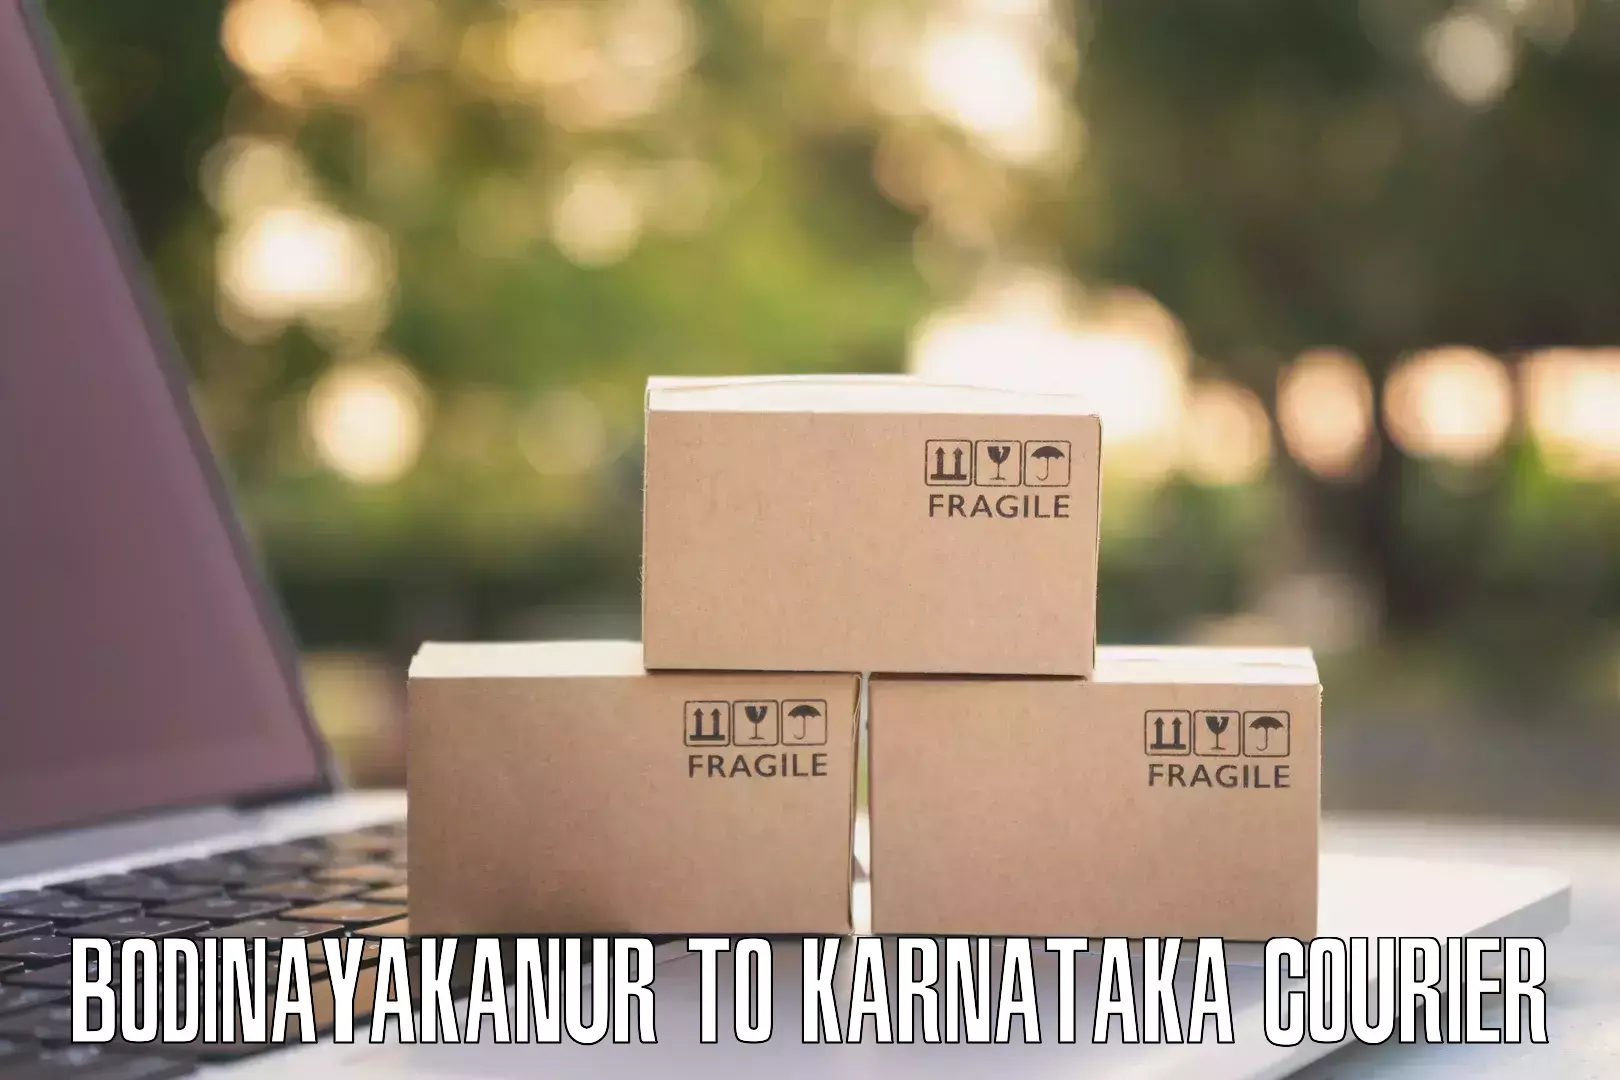 International courier rates Bodinayakanur to Kodagu